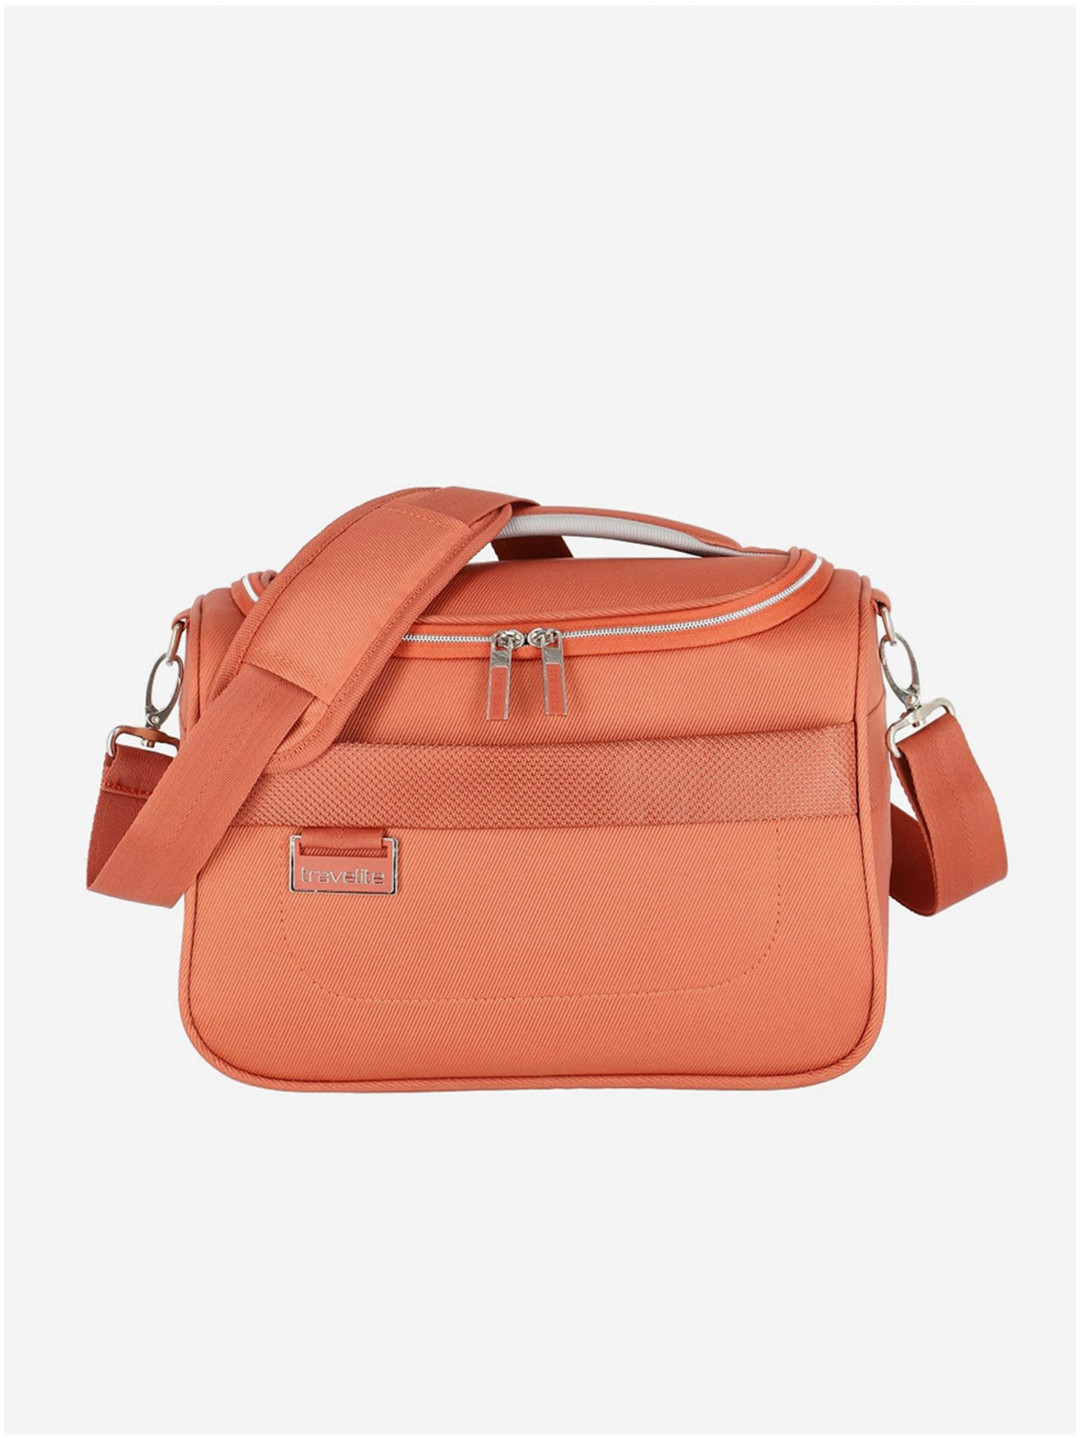 Oranžová dámská kosmetická taška Travelite Miigo Beauty case Copper chutney